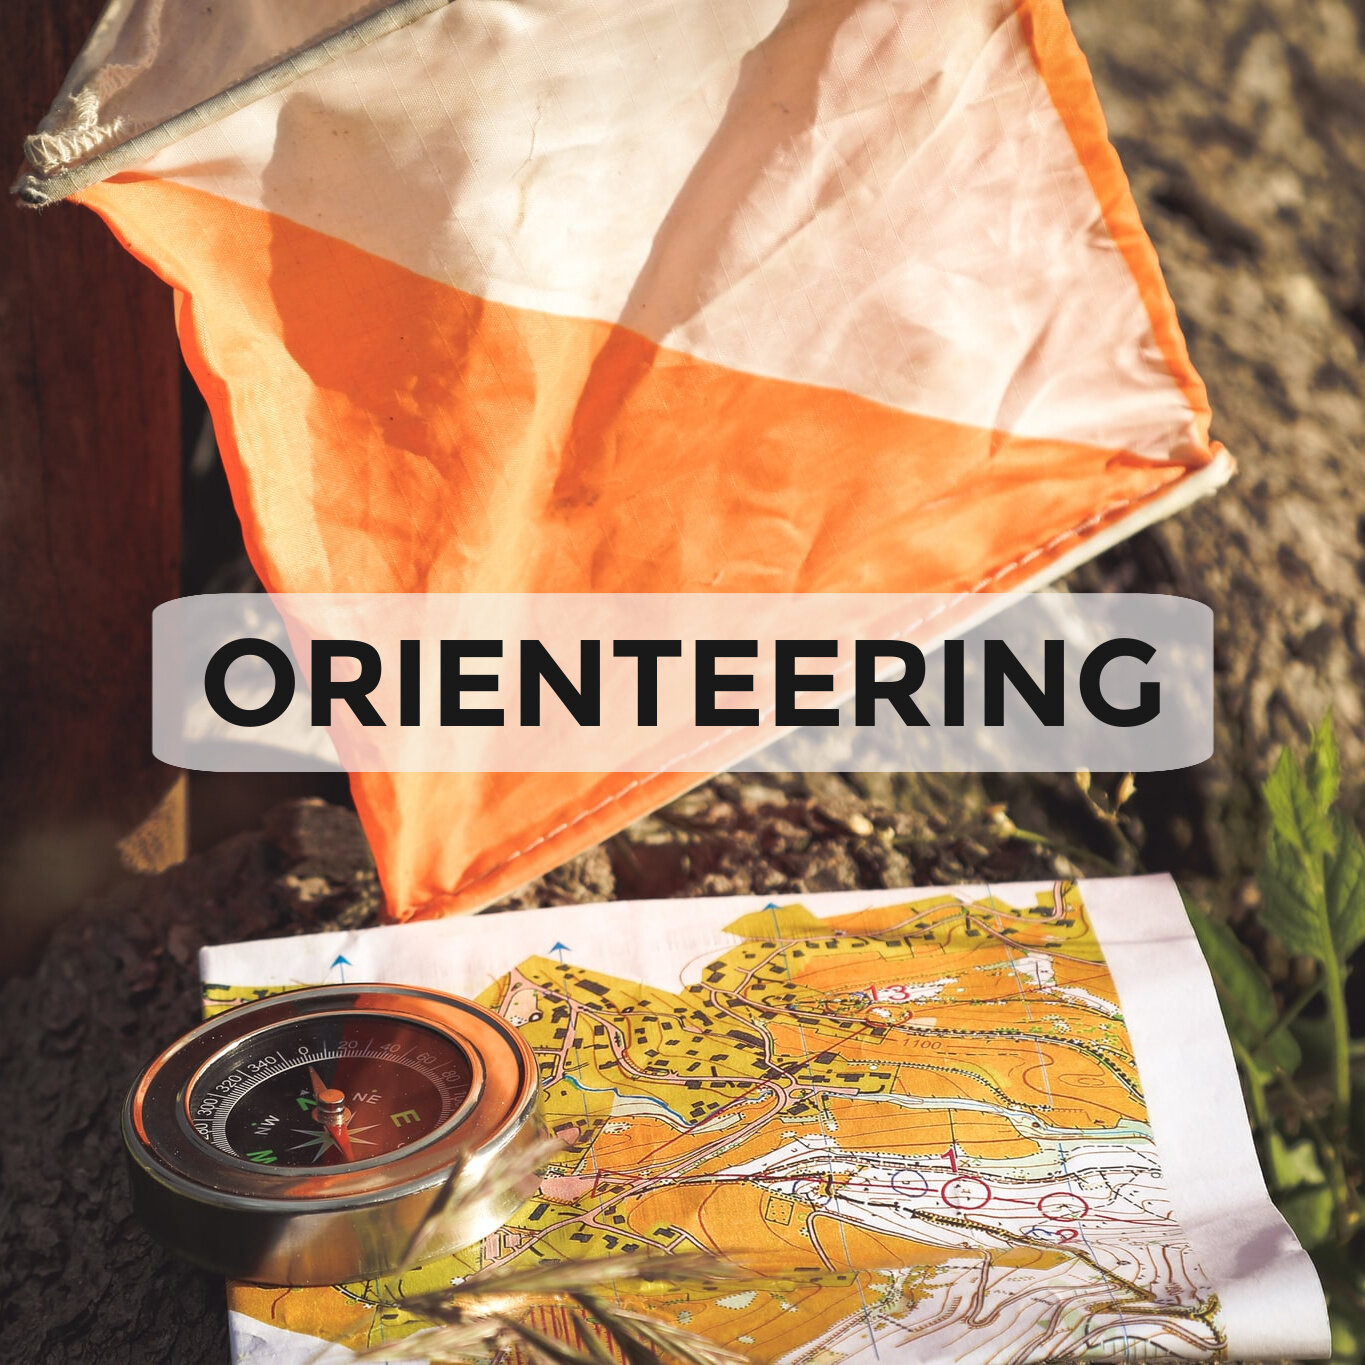 Orienteeering.jpg